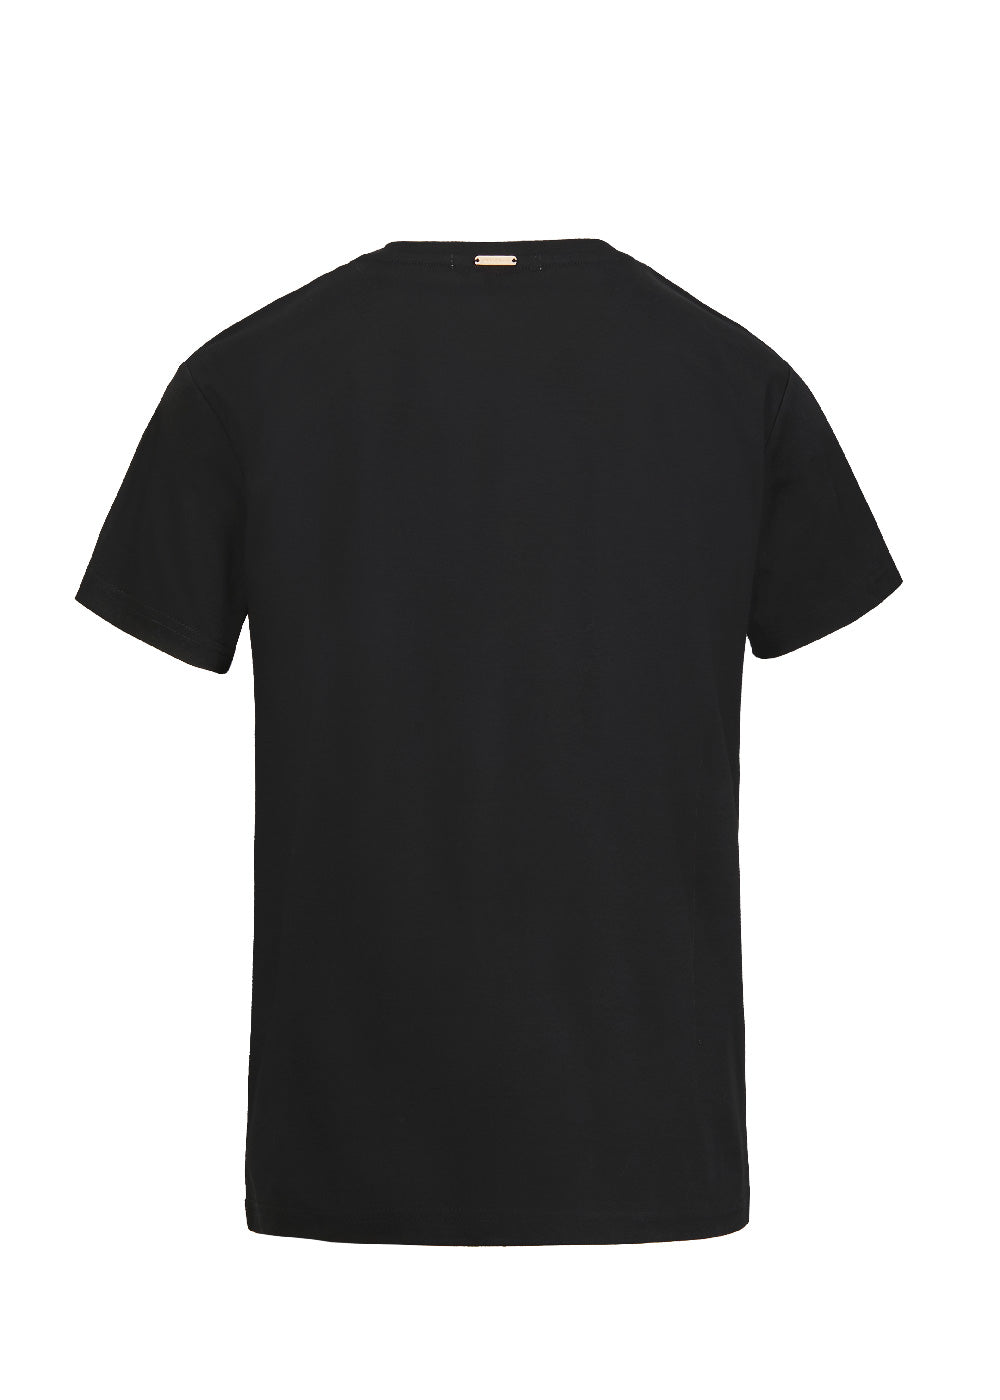 Dean T Shirt in Logo Noir